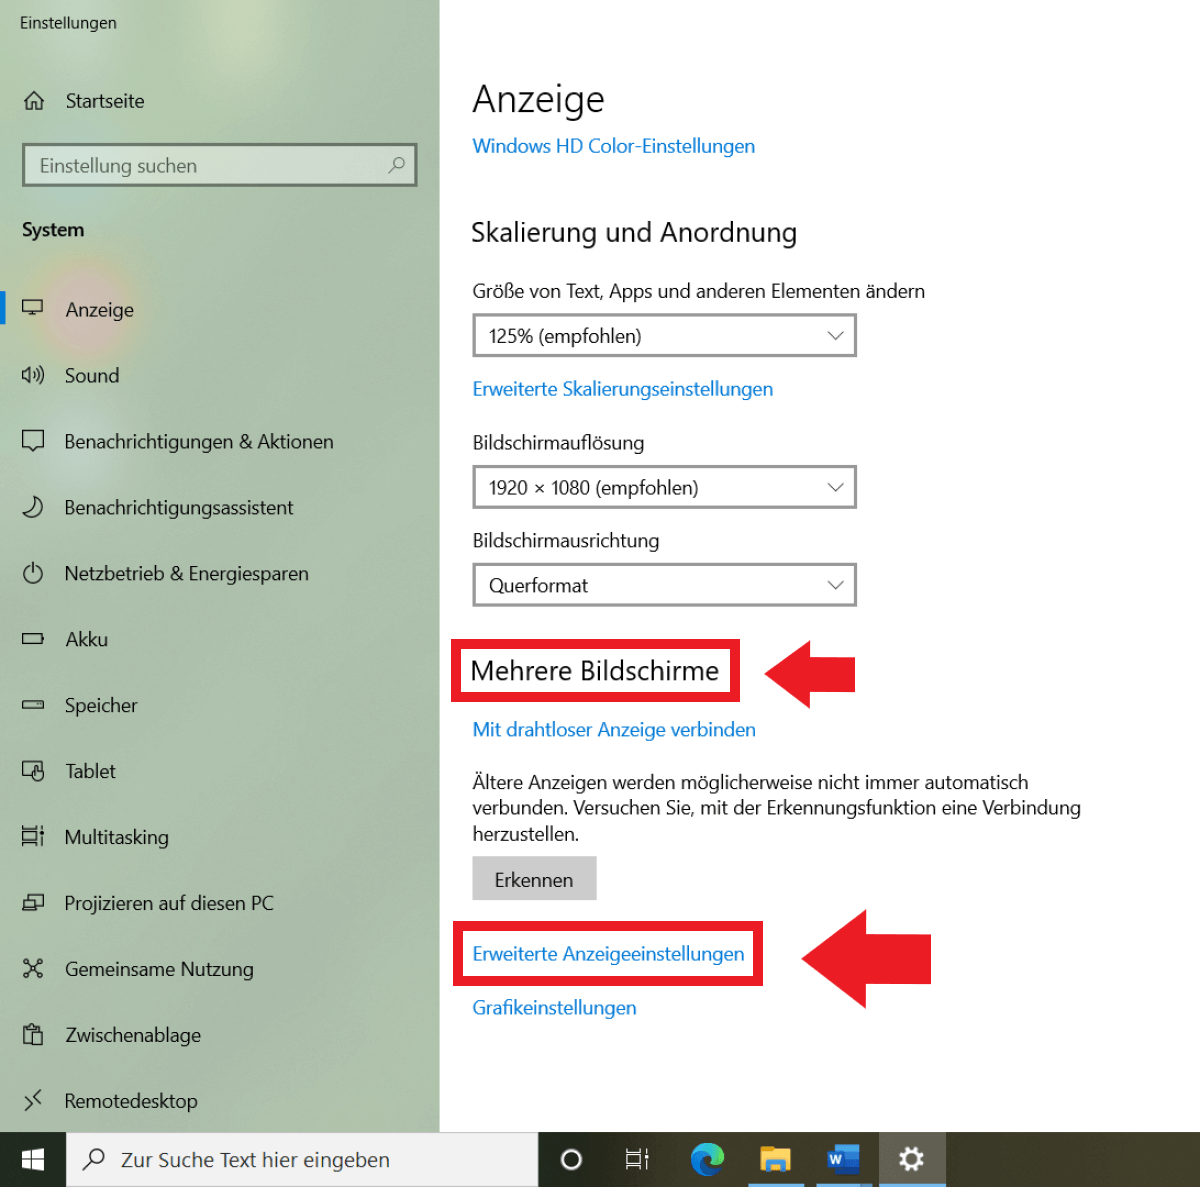 Windows 10: Menü „Anzeige“ und „Erweitere Anzeigeneinstellungen“